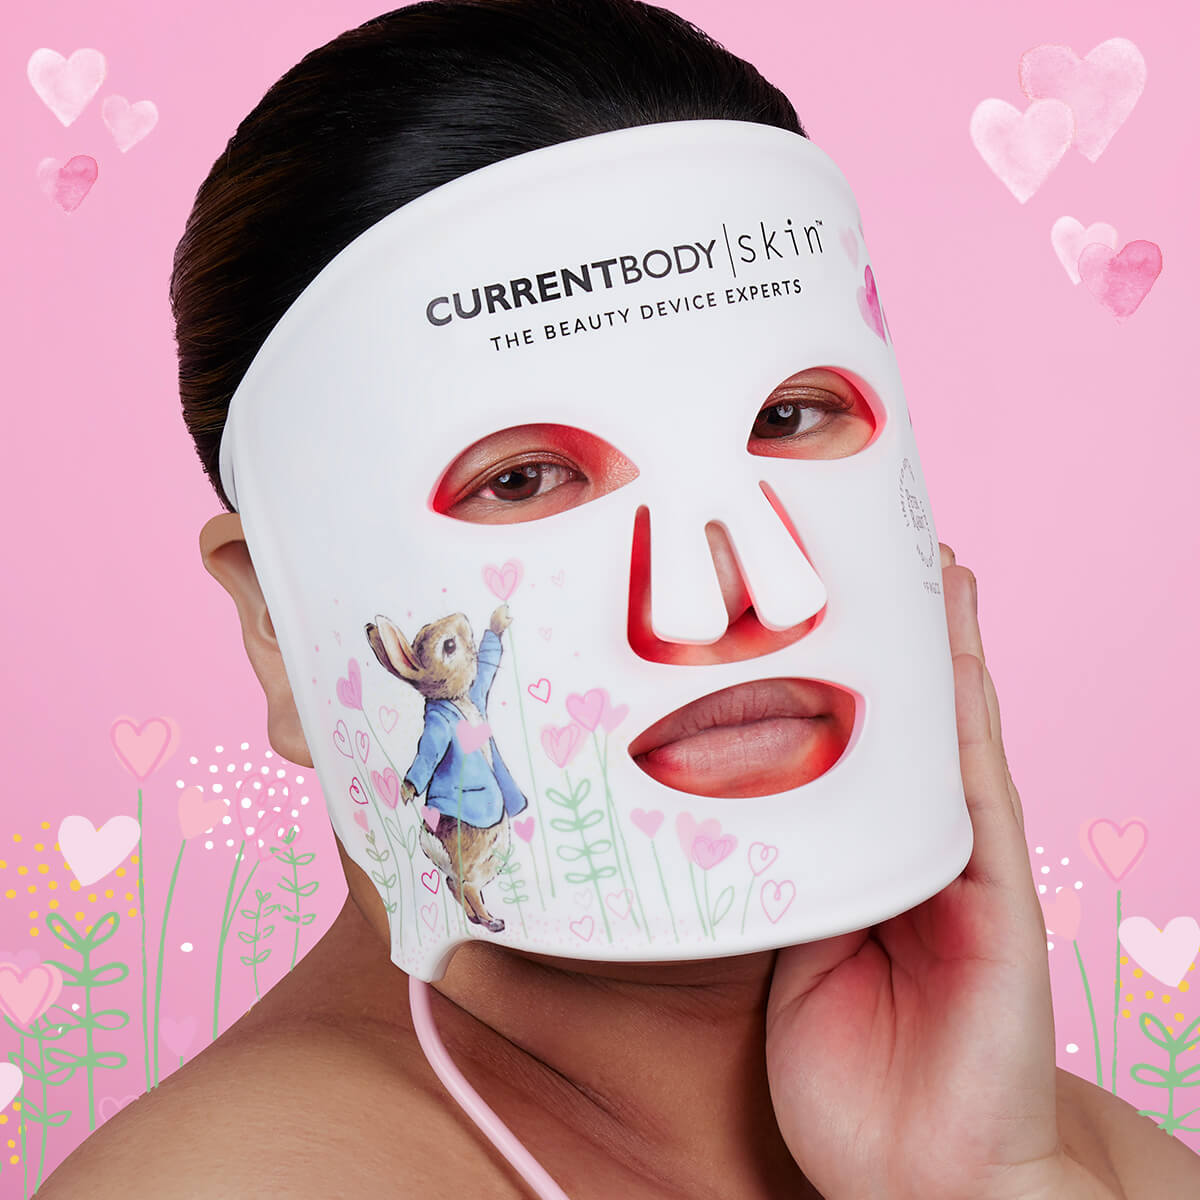 CurrentBody Skin | カレントボディ スキン | 美容機器 | カレント